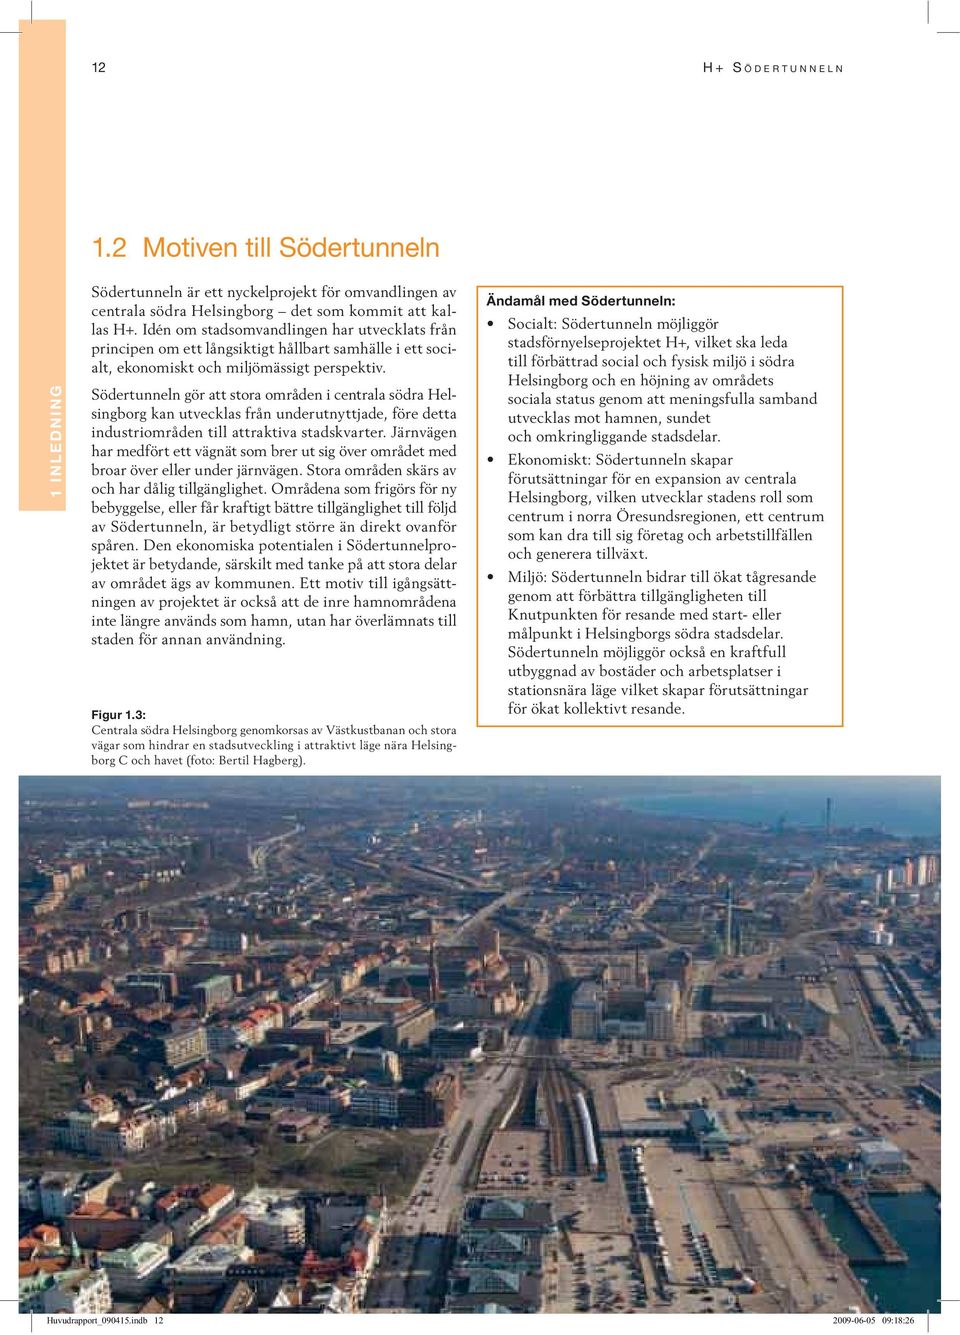 Södertunneln gör att stora områden i centrala södra Helsingborg kan utvecklas från underutnyttjade, före detta industriområden till attraktiva stadskvarter.